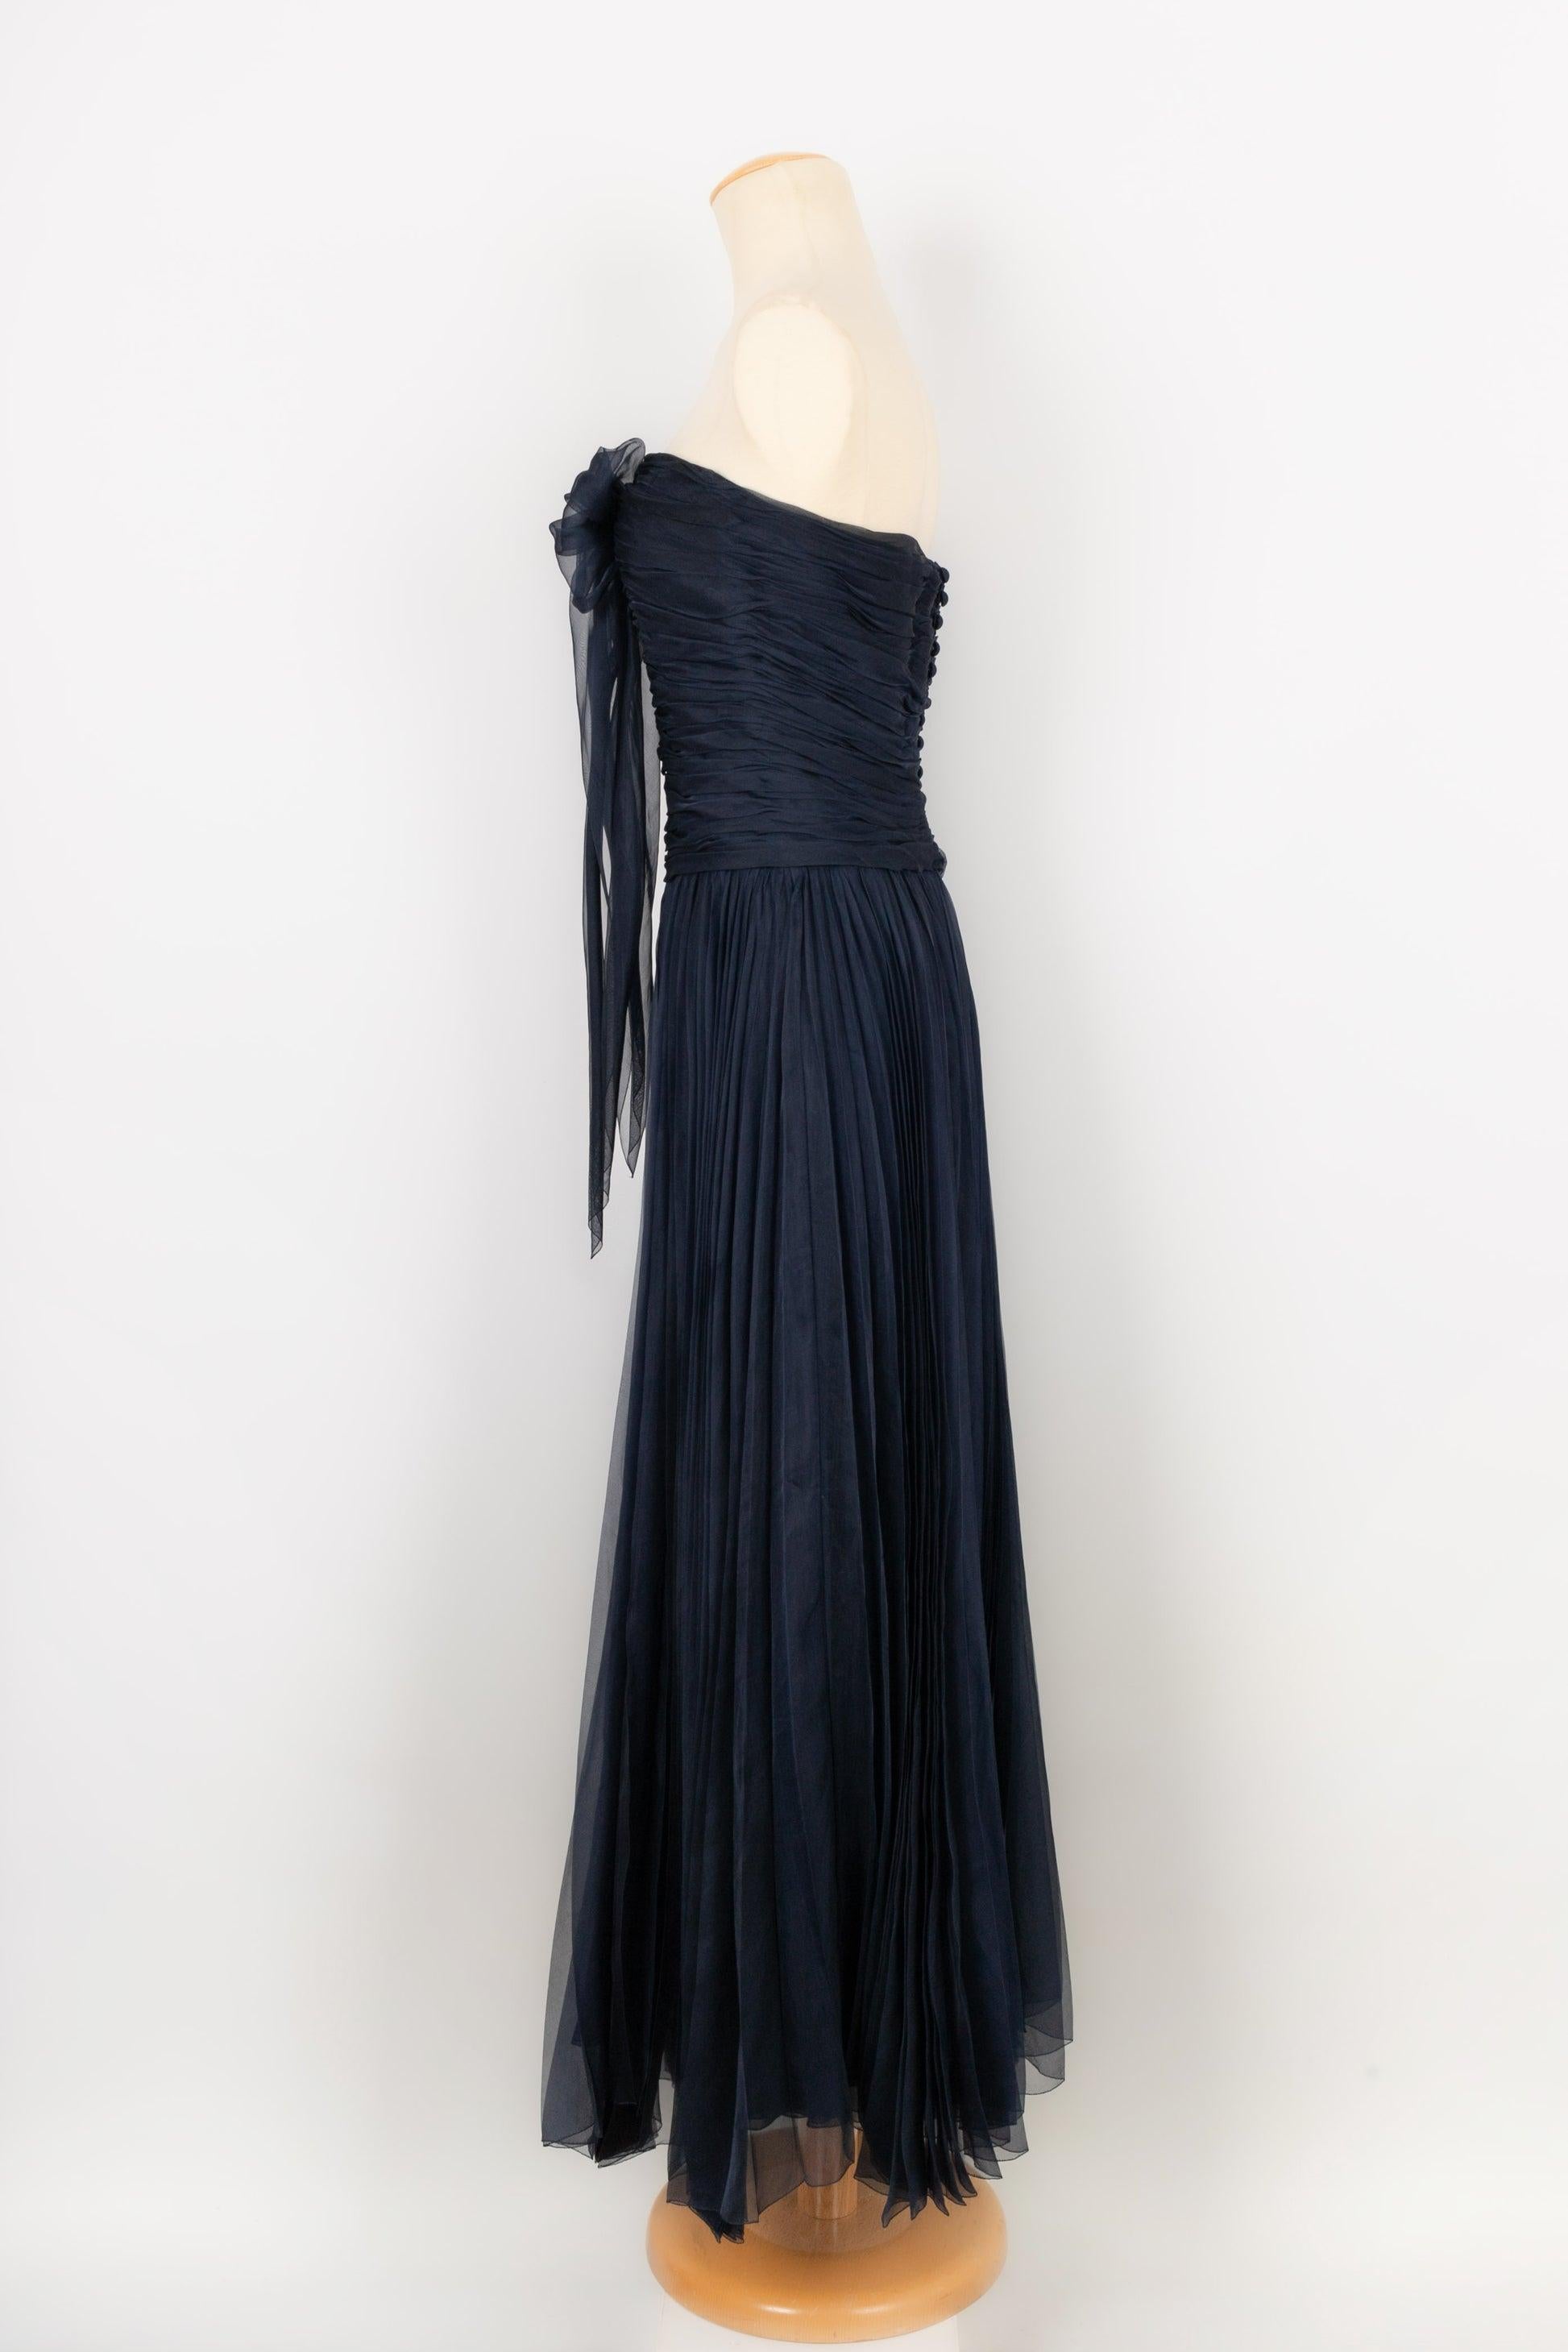 Women's Chanel Long Bustier Dress in Navy Blue Pleated Silk Taffeta